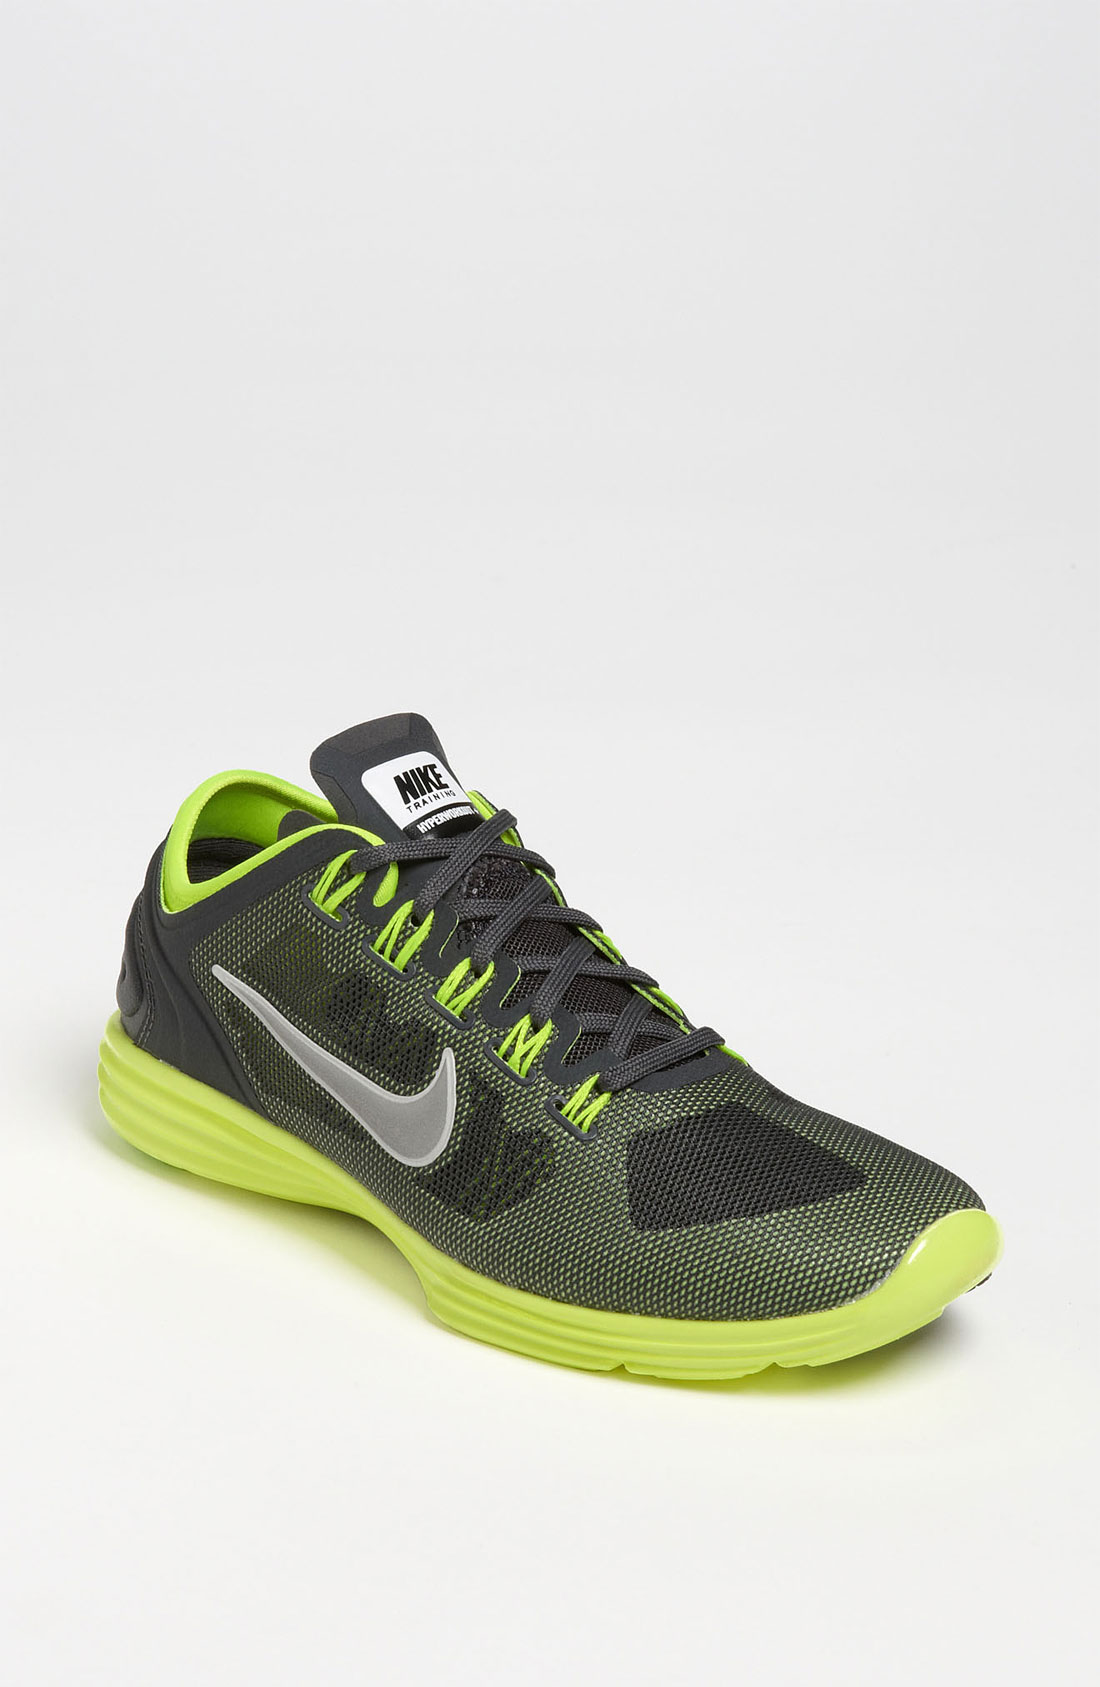 Nike Lunar Hyper Xt Training Shoe in Green (metallic